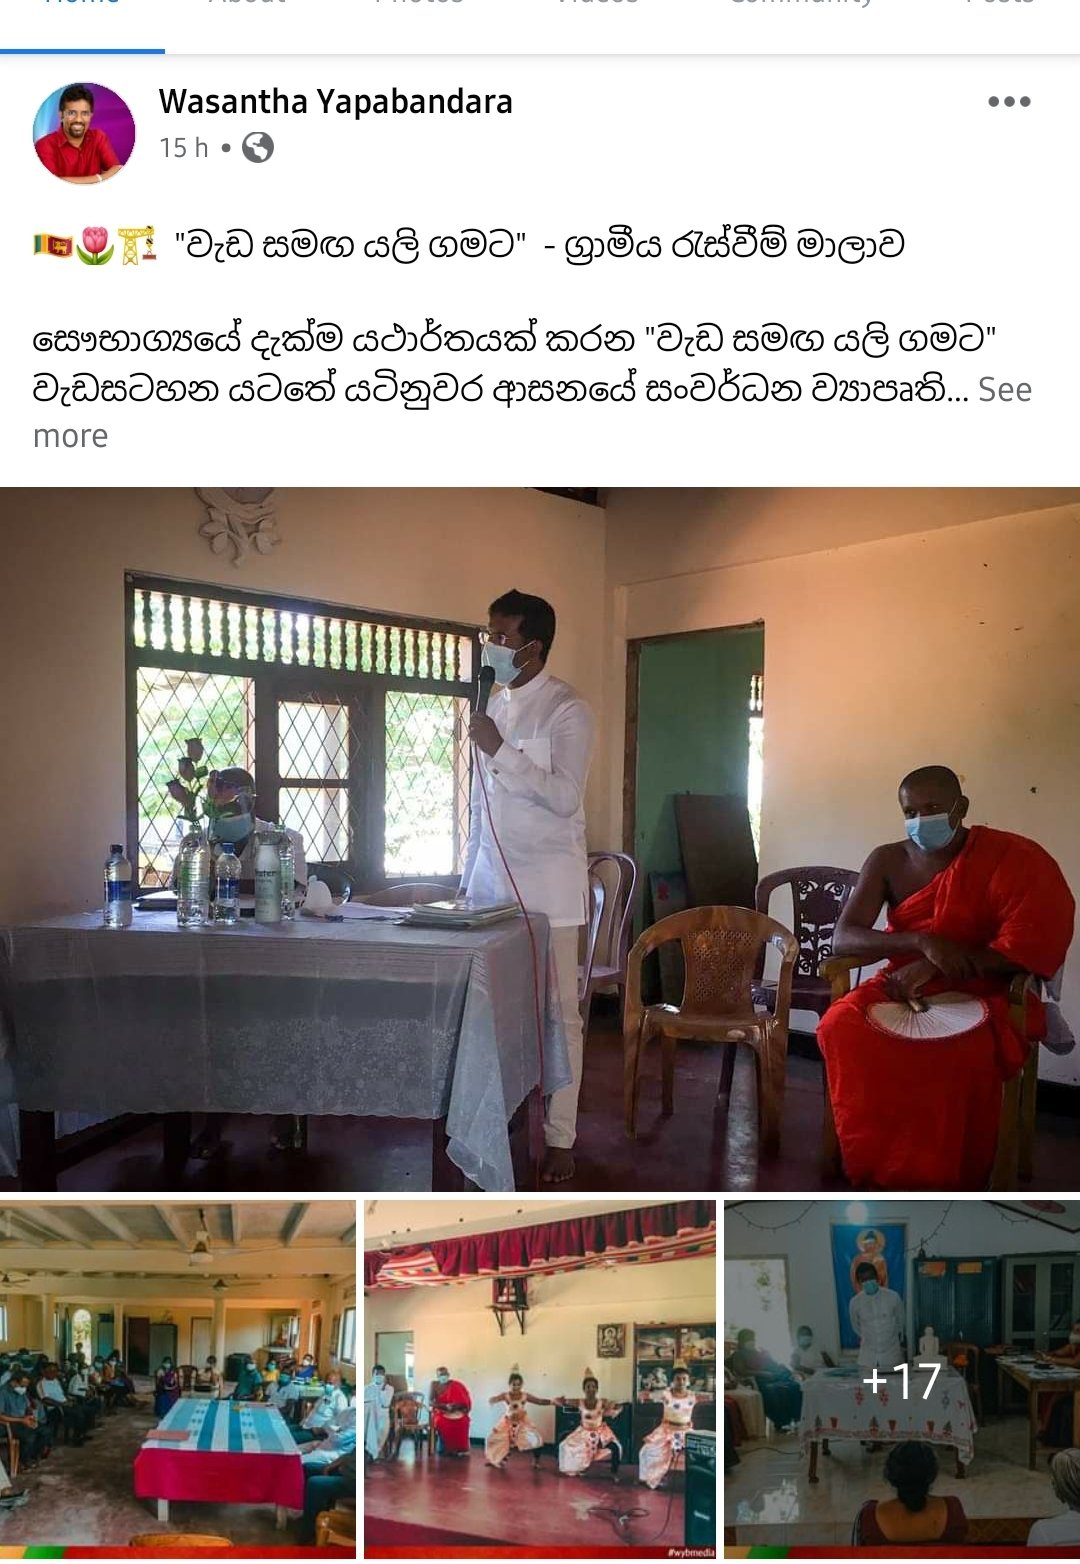 கொரோனா தொற்றிய 6ஆவது எம்.பி வசந்த யாபா பண்டார-Kandy District SLPP MP Wasantha Yapa Bandara Tested Positive for COVID19